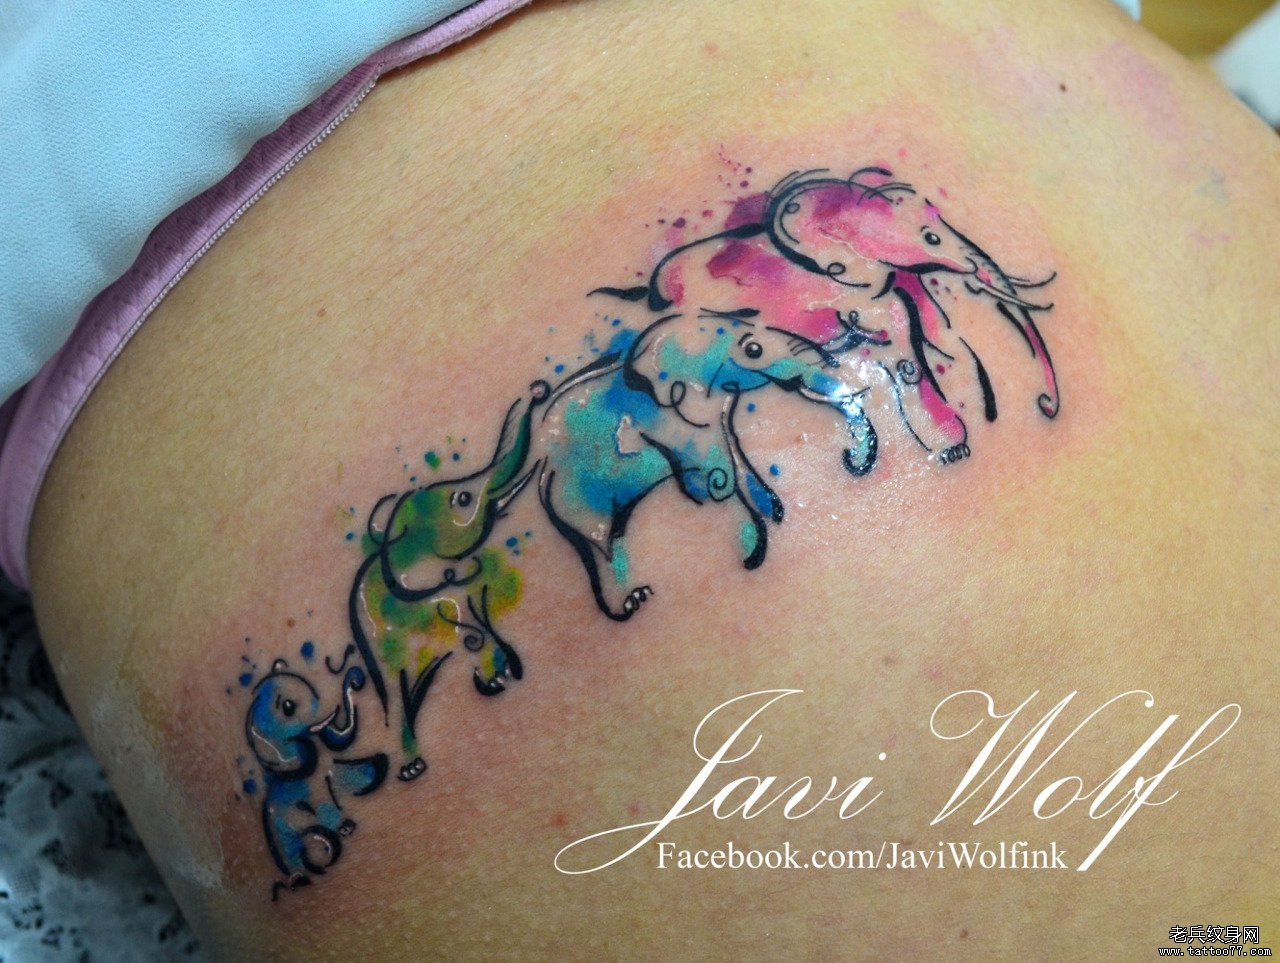 大腿泼墨大象家庭纹身彩色图案